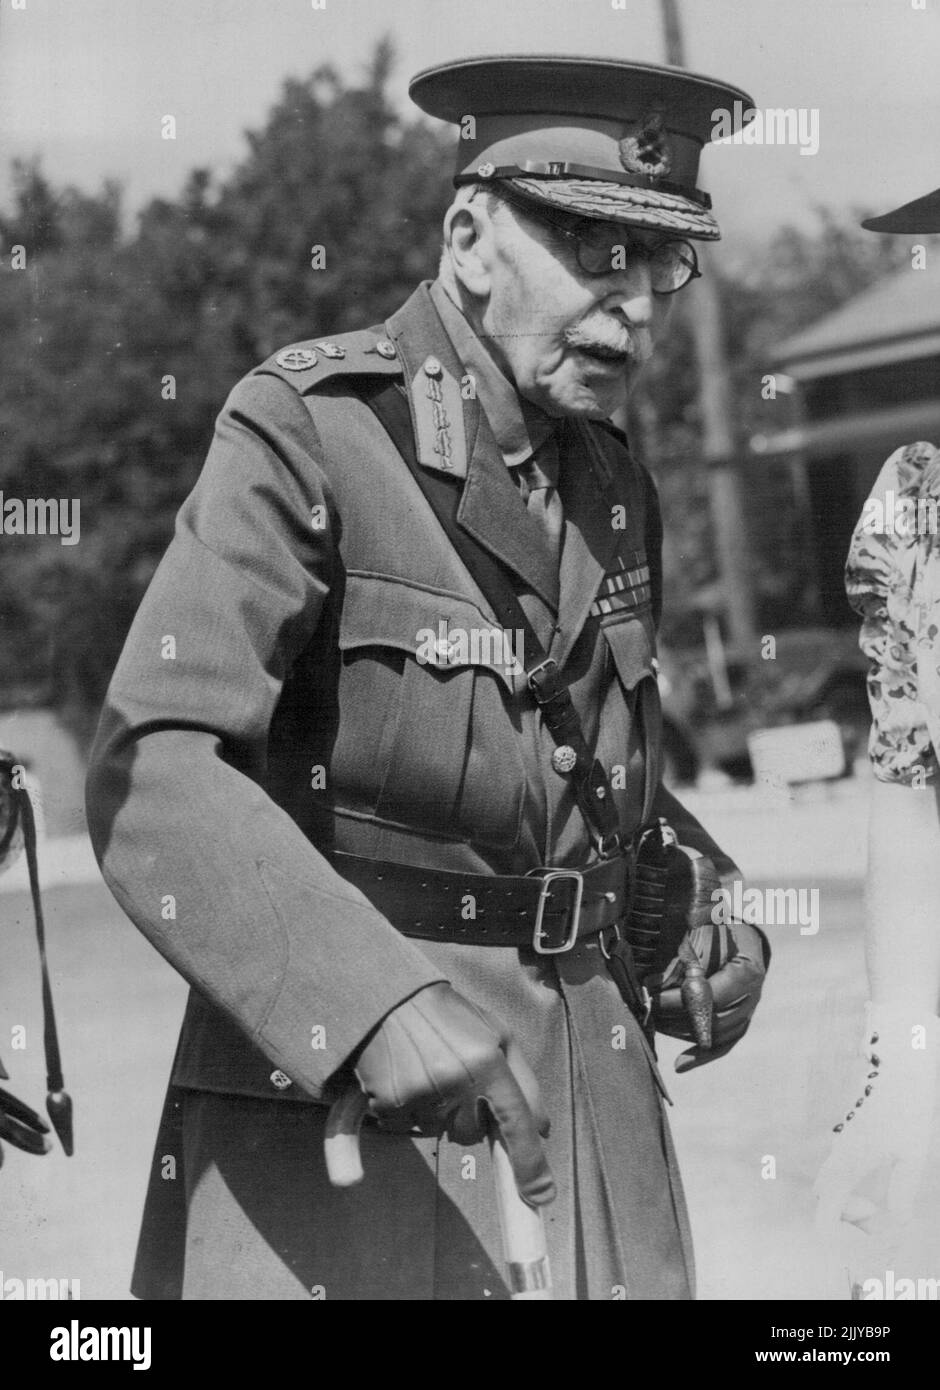 Nuevo retrato del duque de Connaught -- Un retrato reciente de S.A.R. el duque de Connaught, único hijo sobreviviente de la reina Victoria, quien tiene 89th años, tomado durante su visita al Establecimiento de la Guerra de la Policía Militar, en Aldershot. 30 de agosto de 1939. (Foto de Sports & General Press Agency Limited). Foto de stock